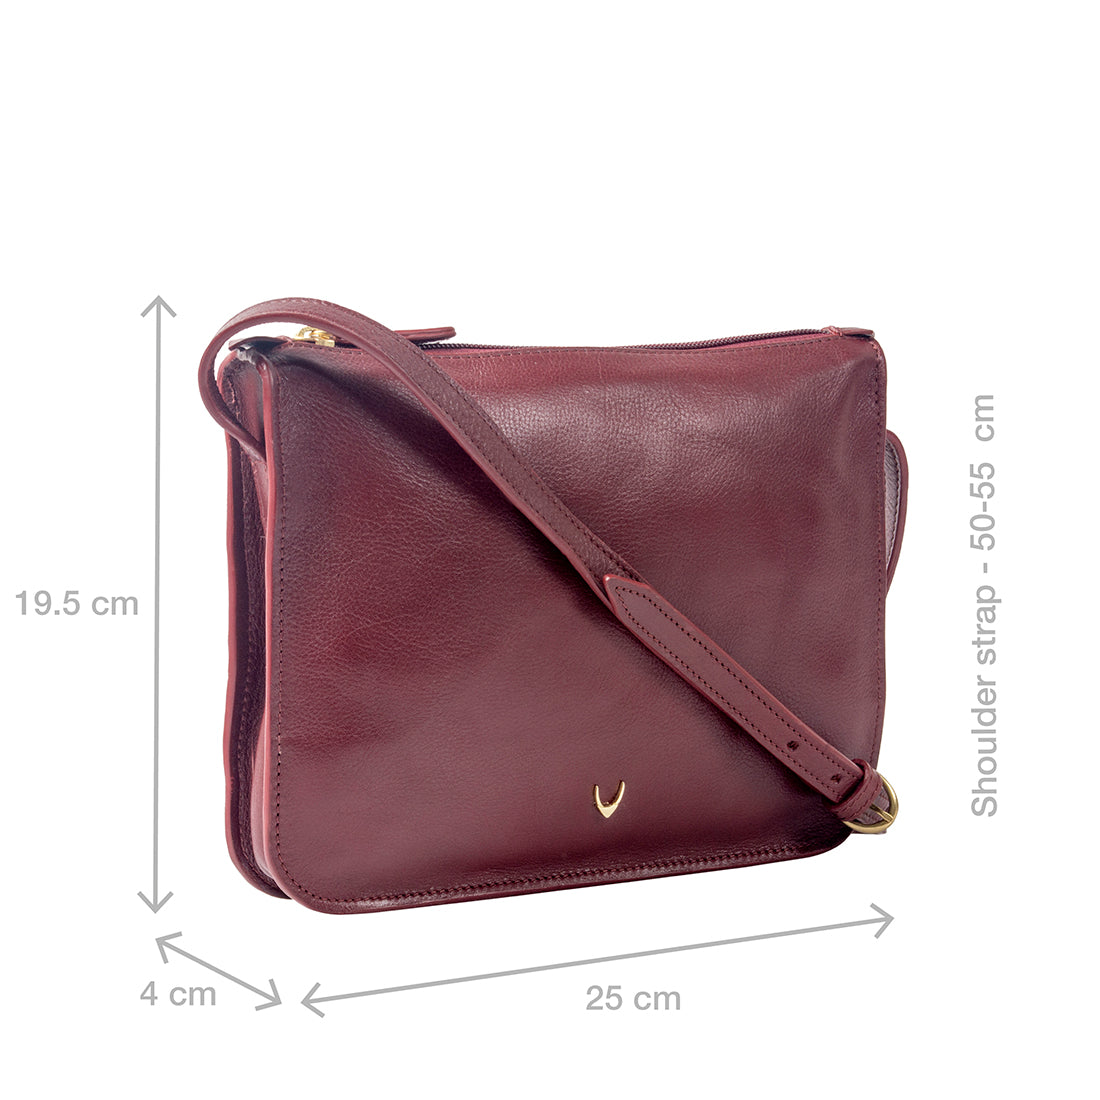 Hidesign Handbags : Buy Hidesign Maroon Hobo Bag Online